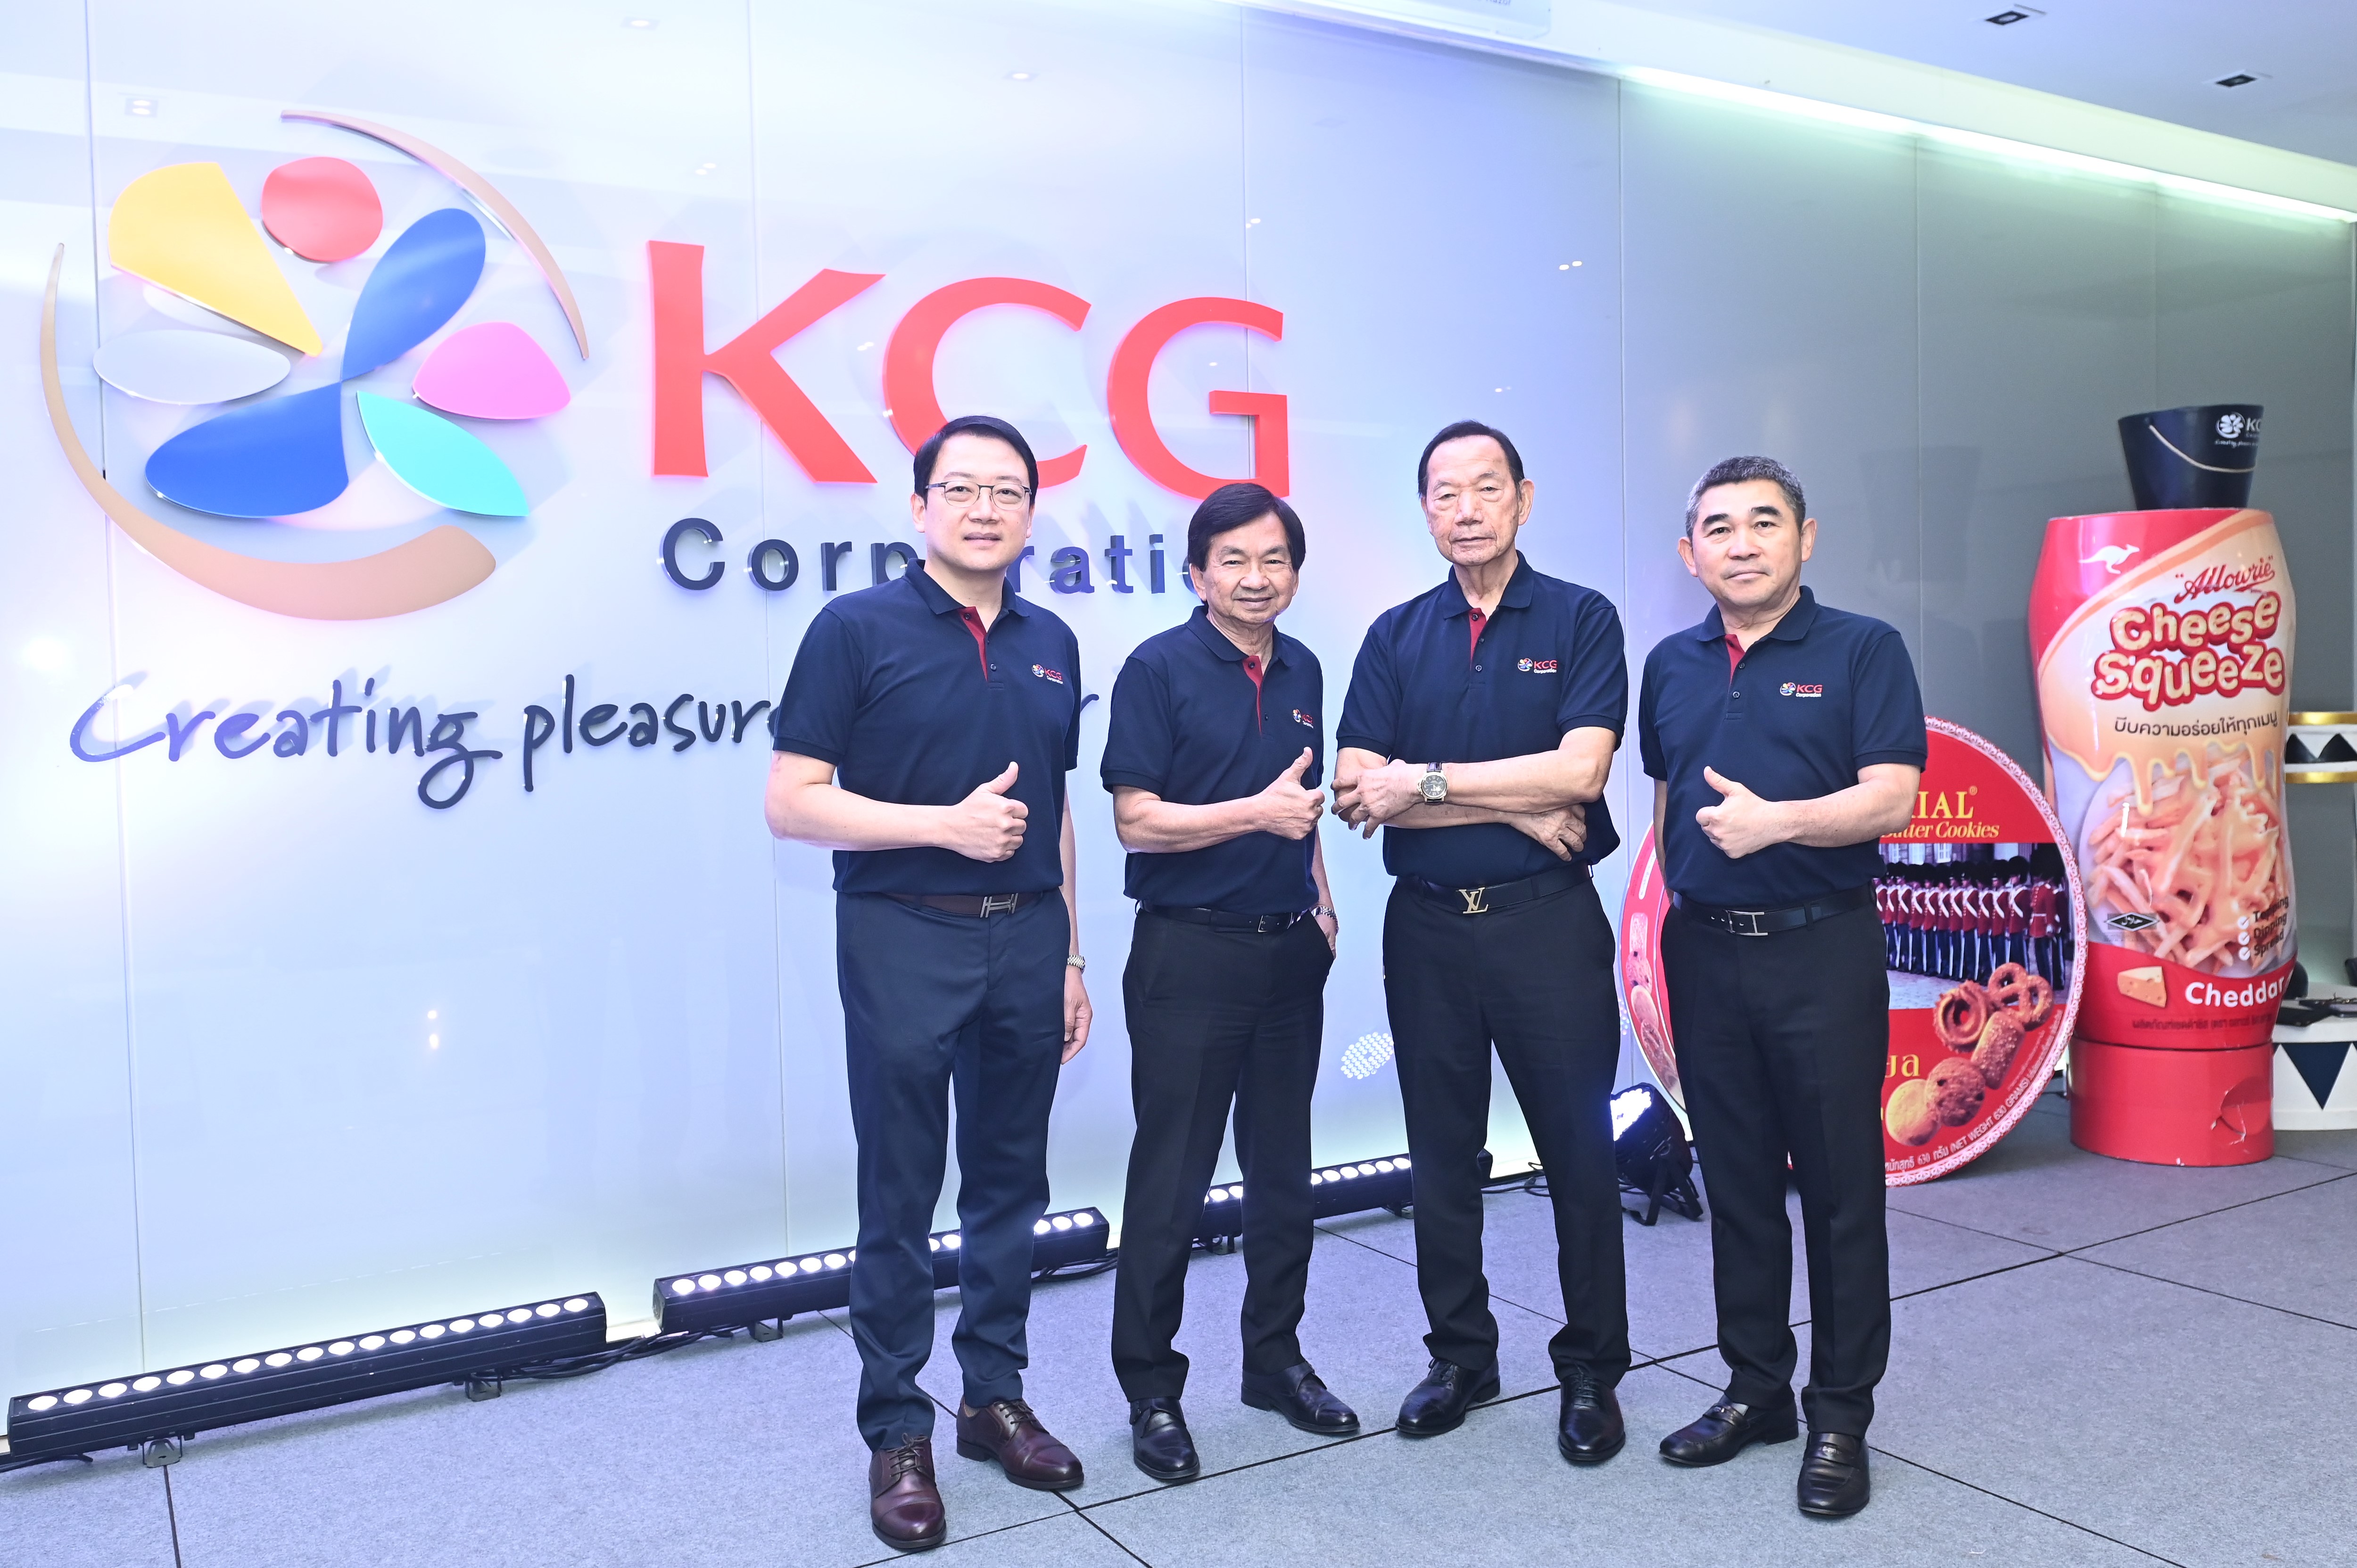 KCG เปิดยุทธศาสตร์ผู้นำการผลิตและนำเข้าผลิตภัณฑ์เนย ชีส และอาหารสำเร็จรูป ปักธงลุย ‘นวัตกรรม ยกระดับเทคโนโลยีการผลิต’